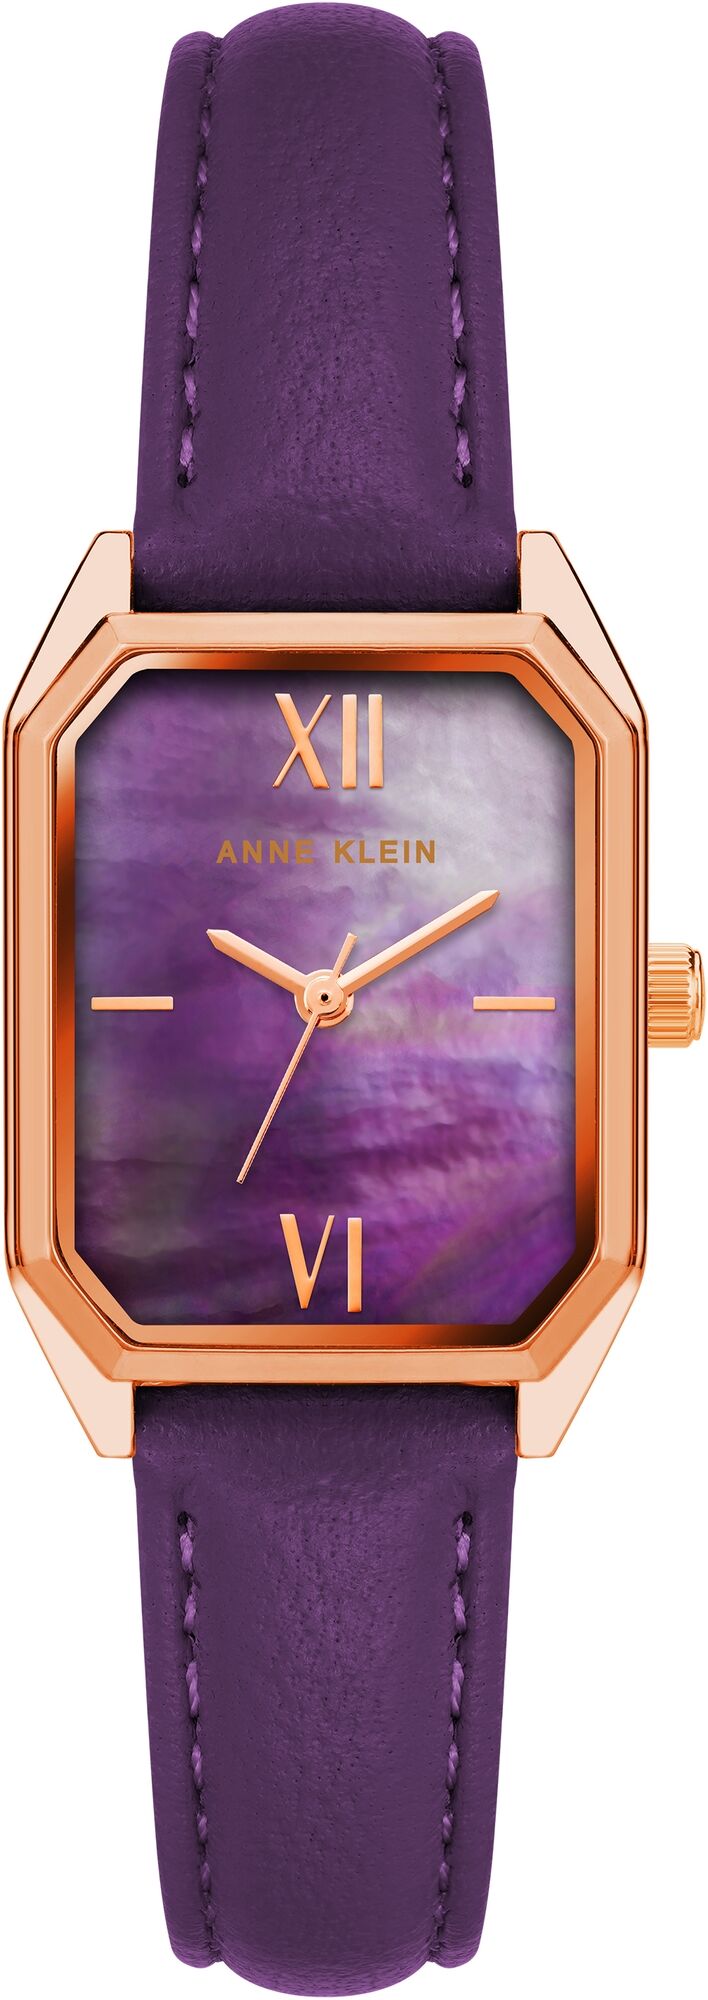 Женские наручные часы Anne Klein Leather 3874RGPR